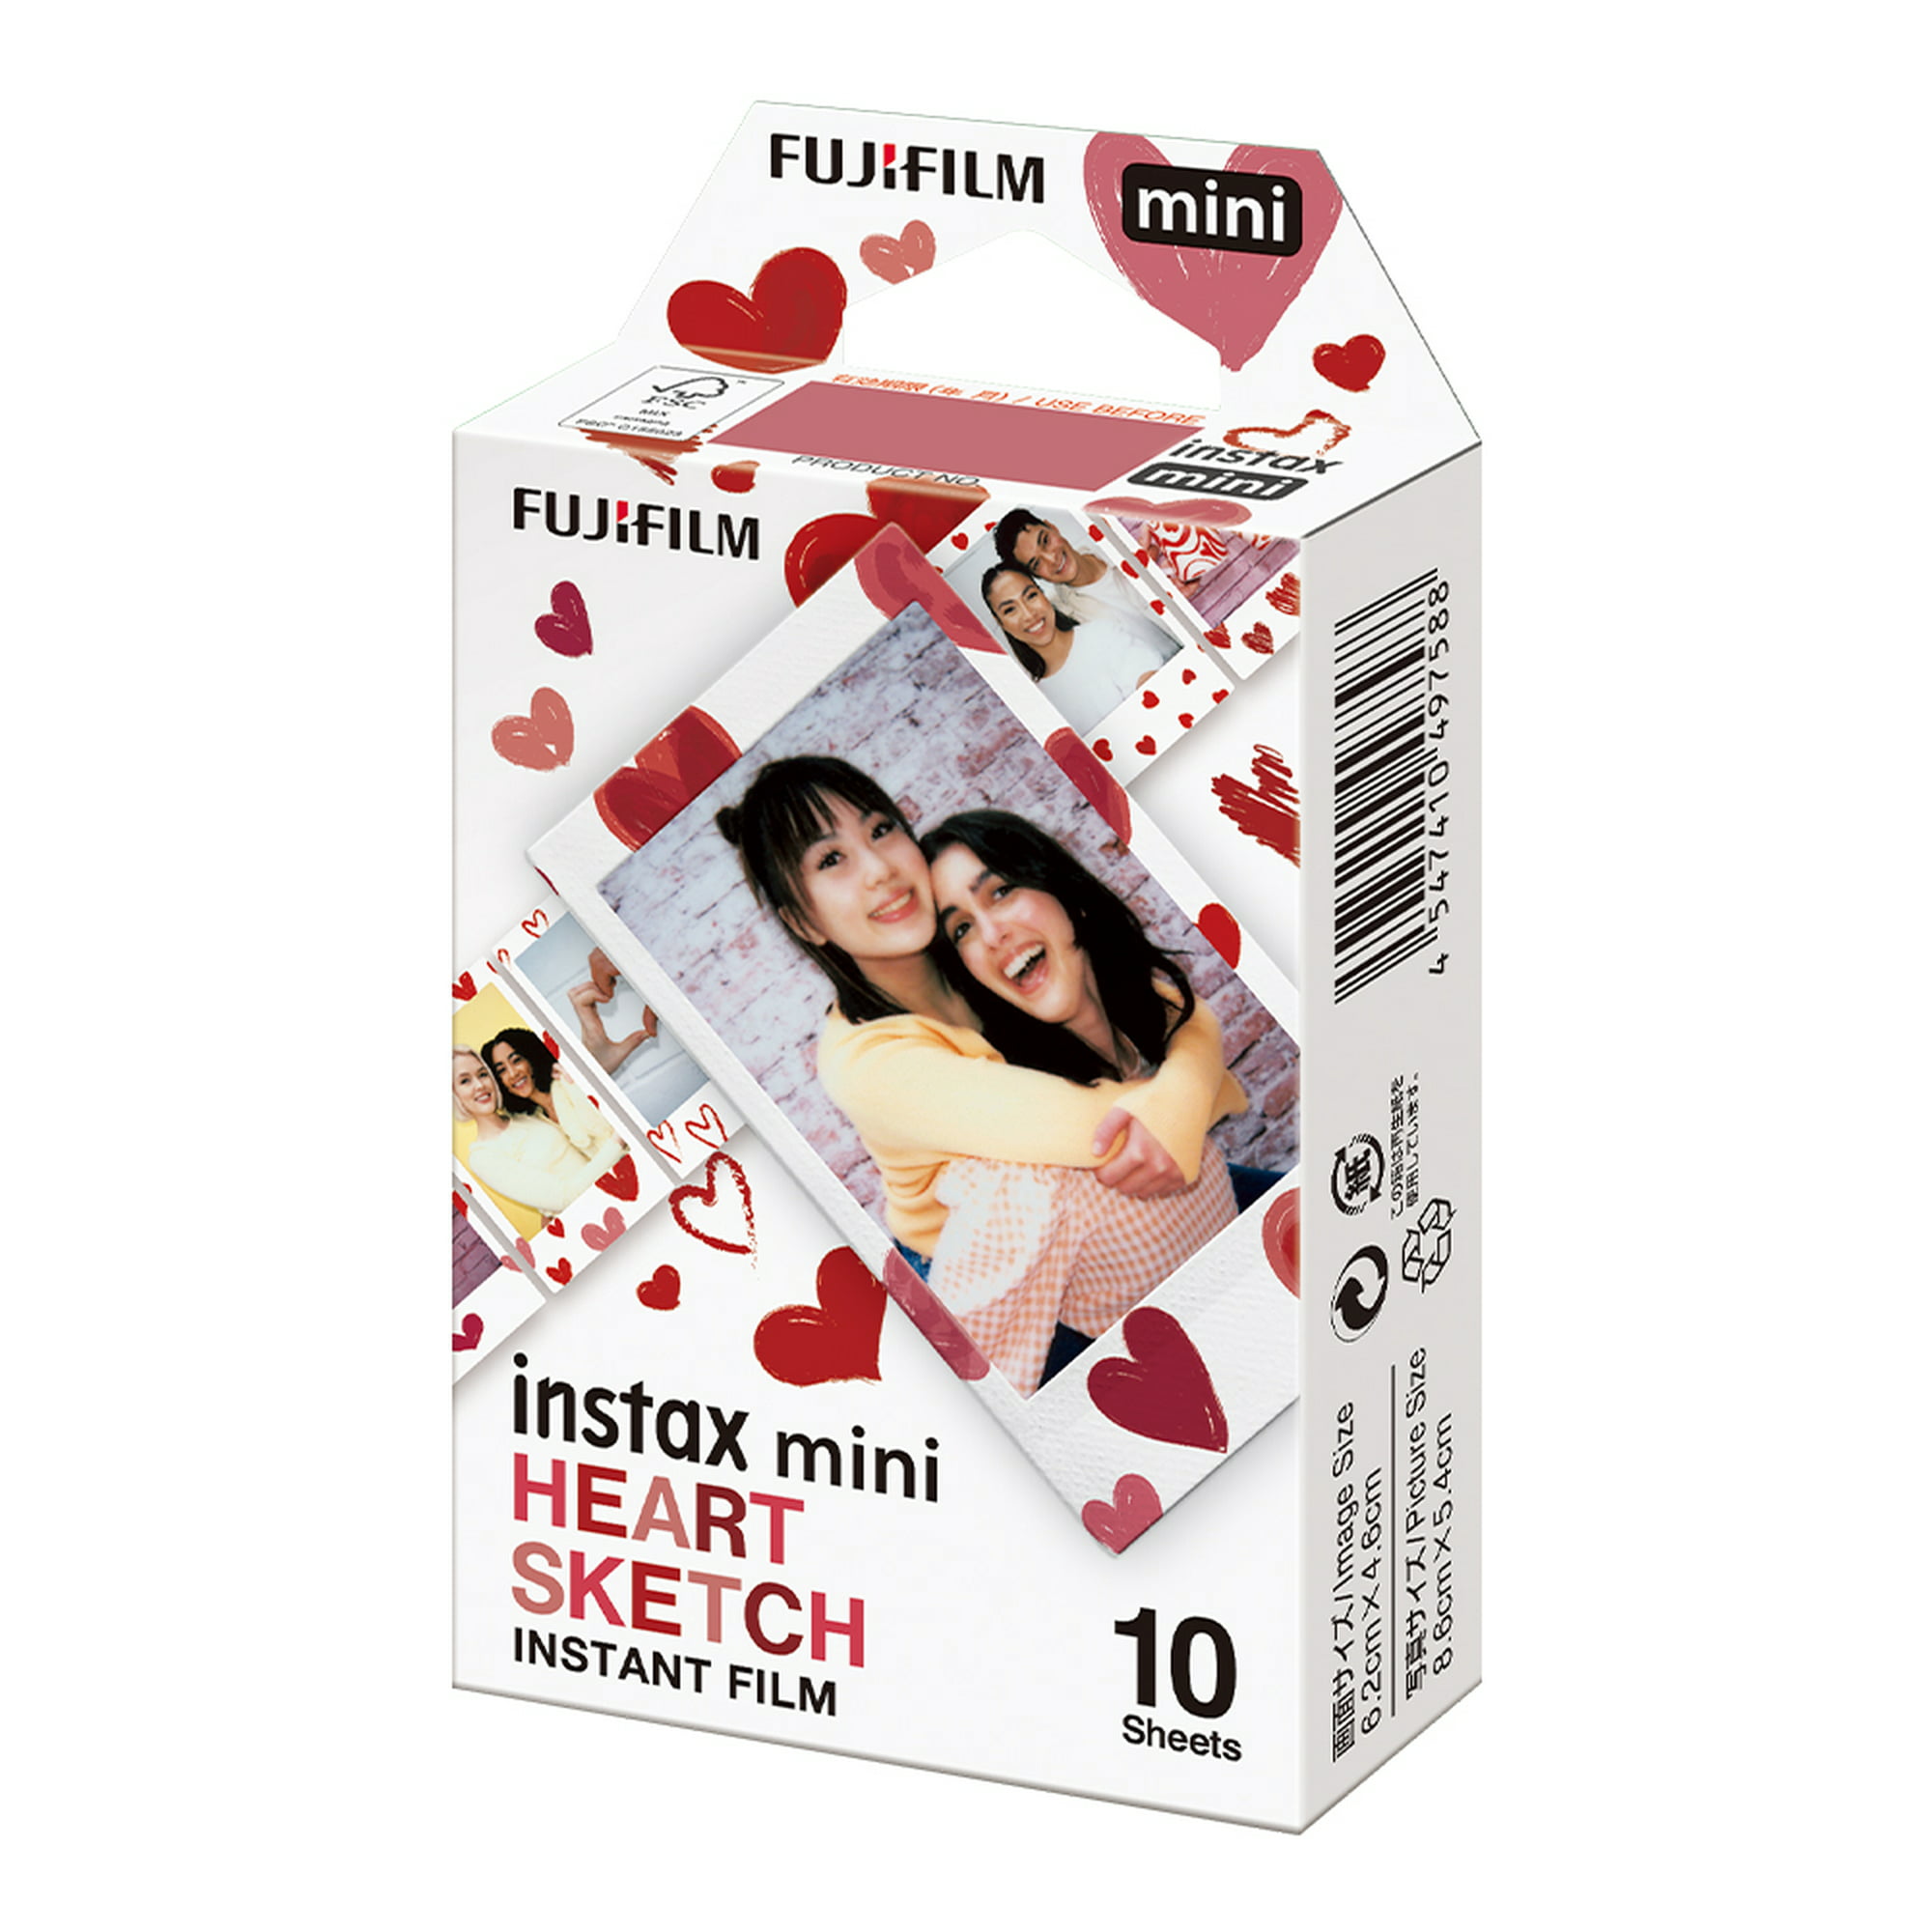 Fujifilm Instax Mini Film hojas blancas y caja de papel